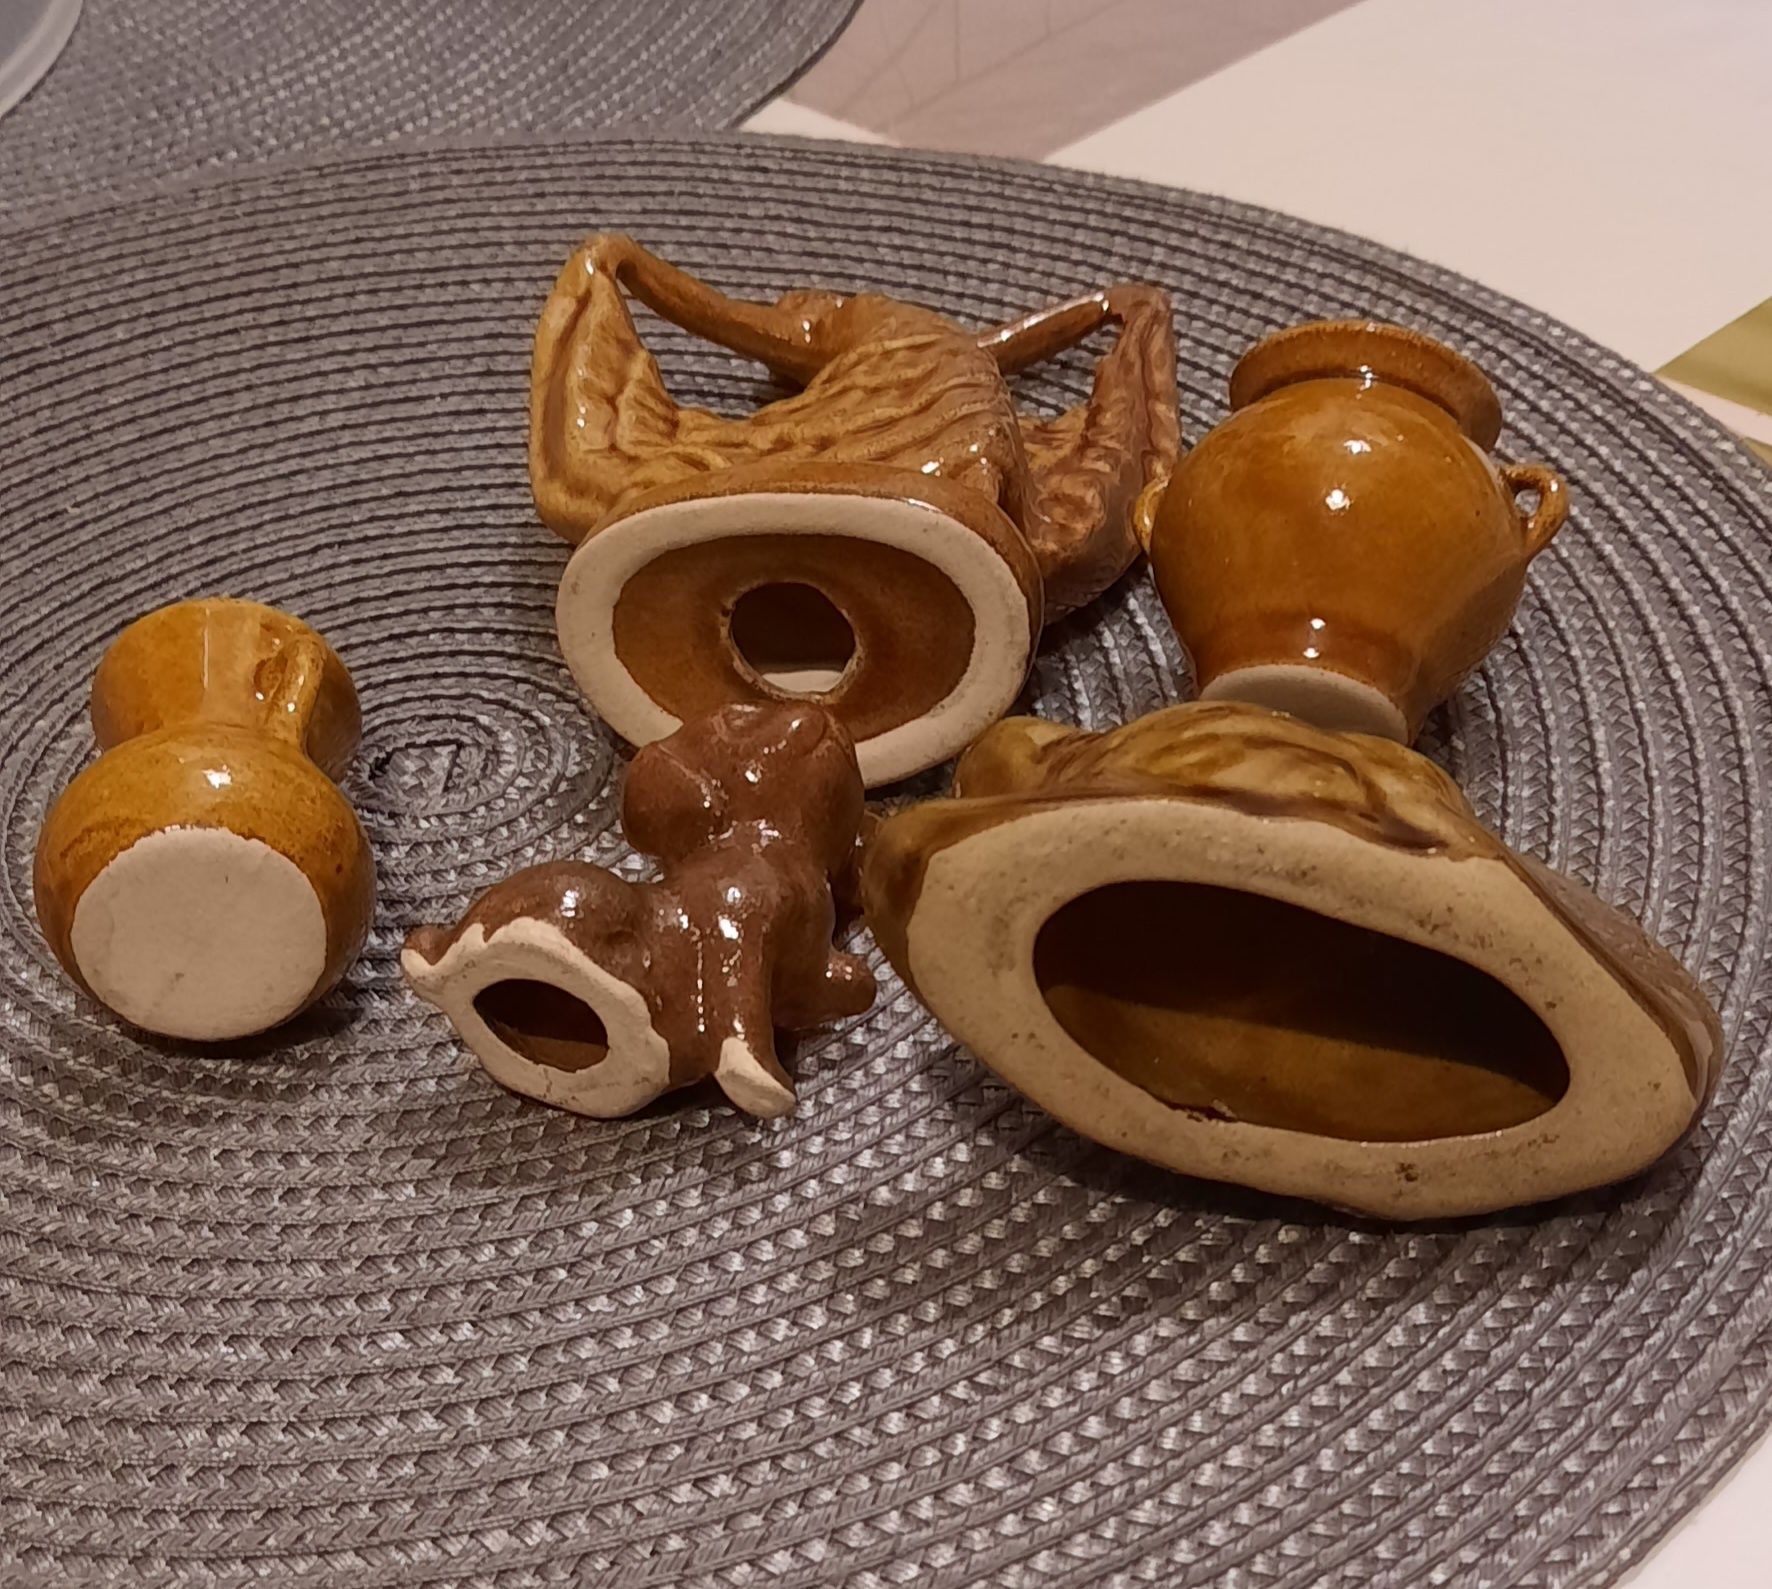 Kolekcja figurek ceramicznych PRL